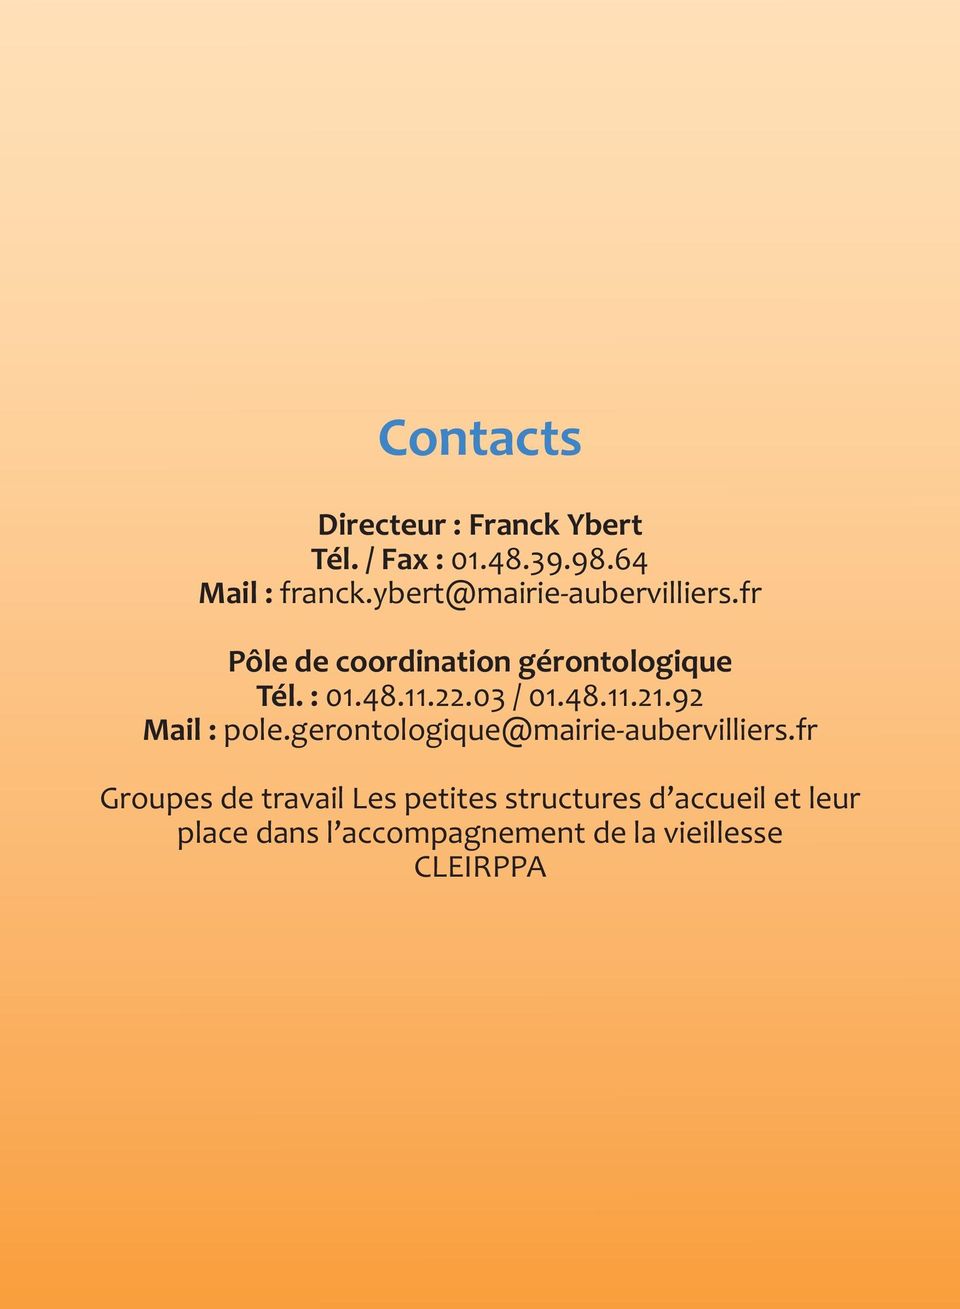 03 / 01.48.11.21.92 Mail : pole.gerontologique@mairie-aubervilliers.